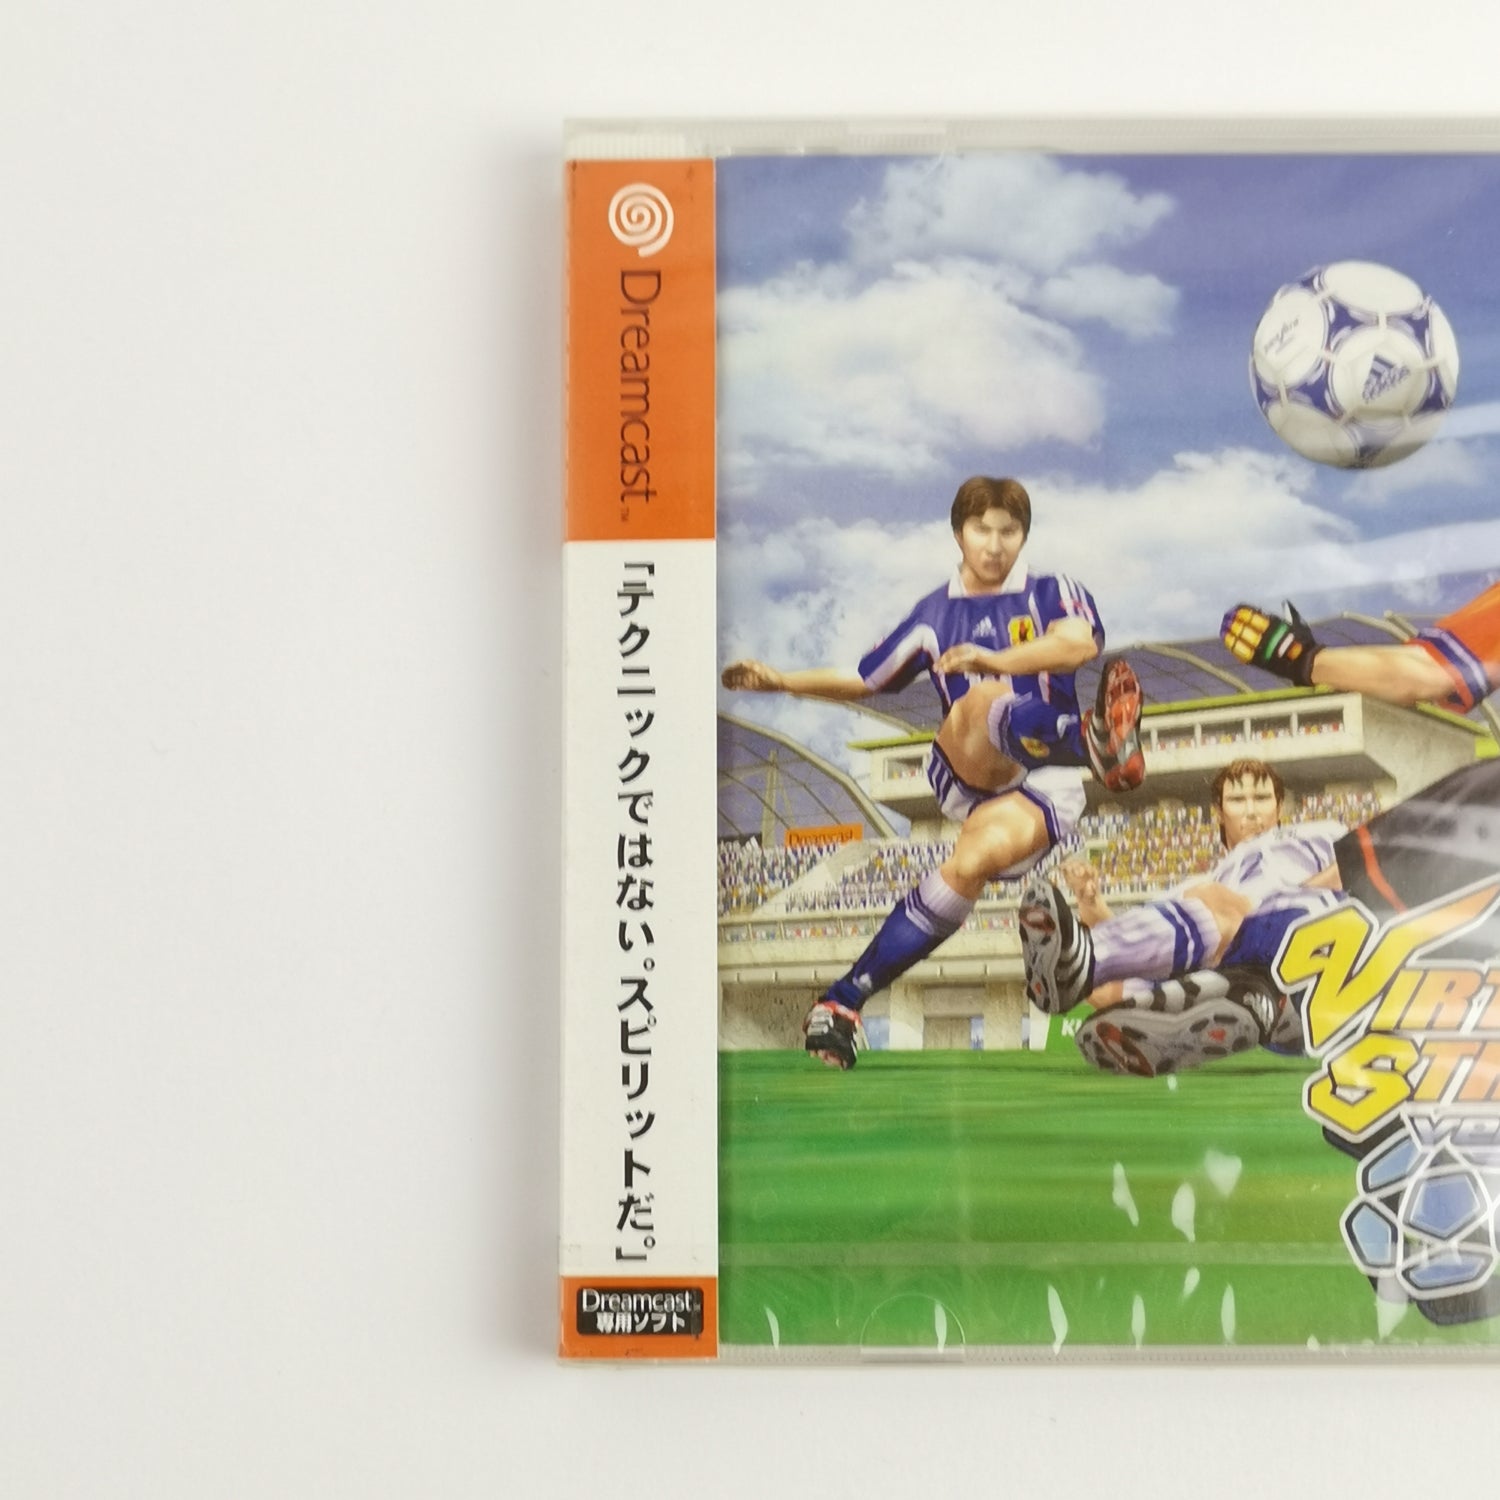 Japanese Sega Dreamcast Game: Virtua Striker 2 Ver. 2000.1 | NEW NEW SEALED